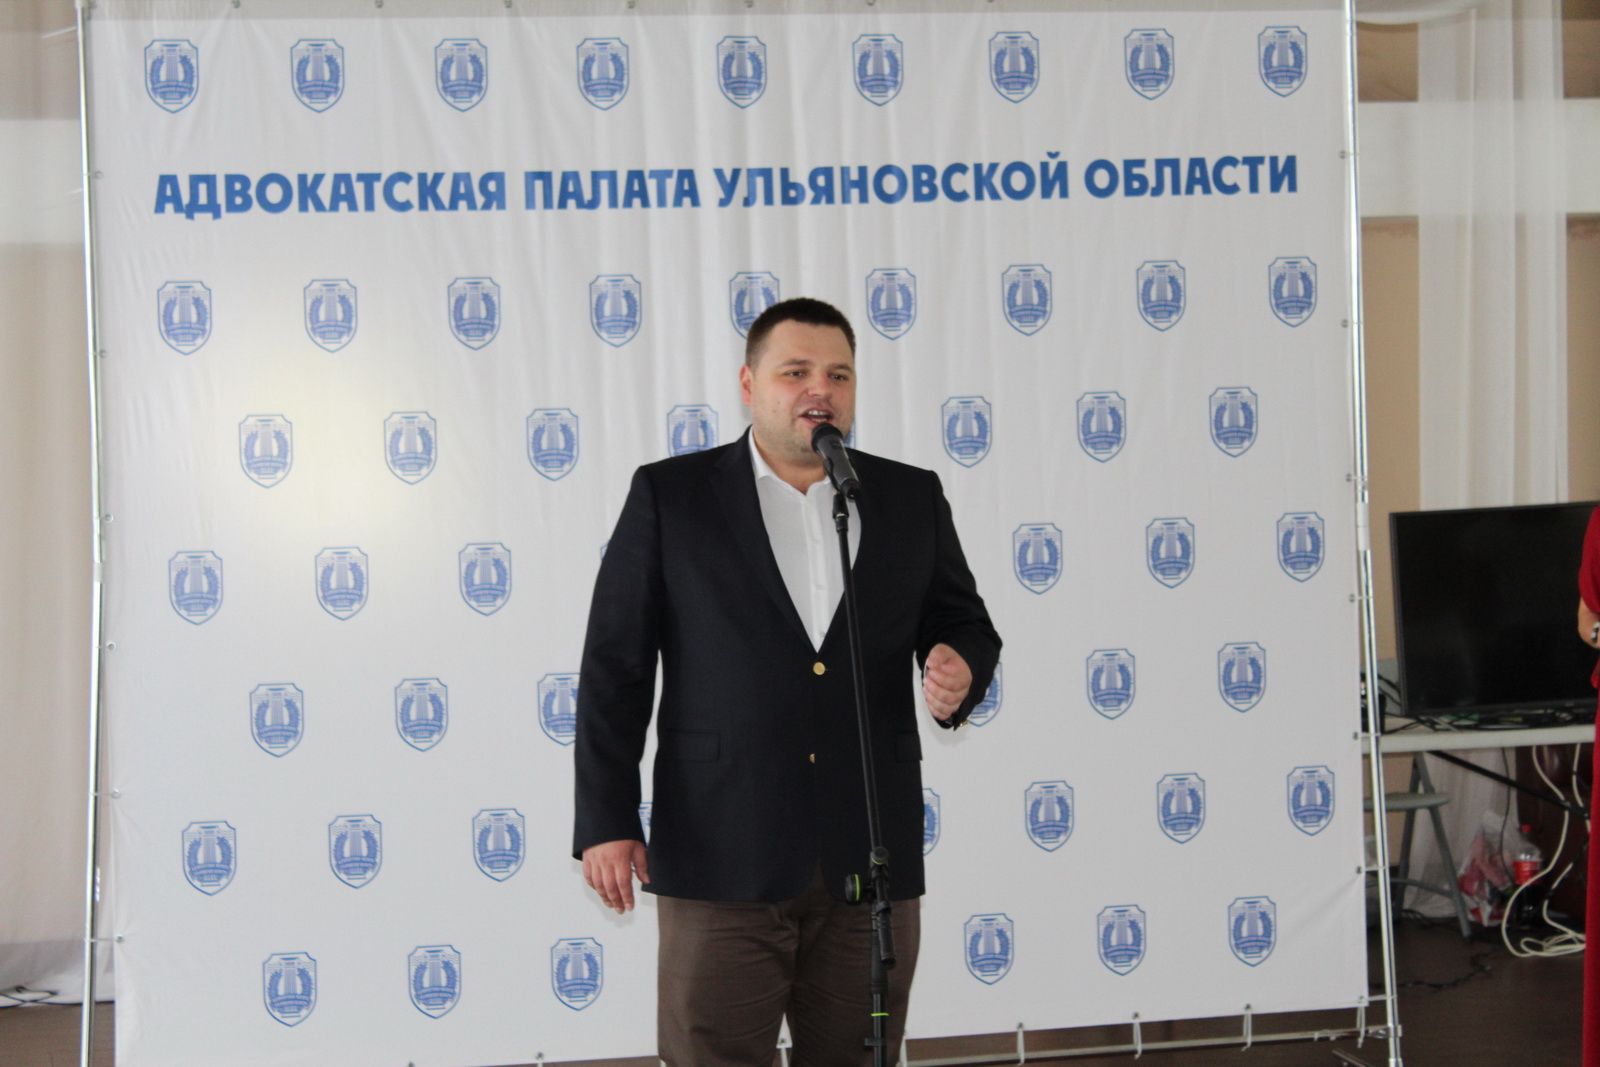 «Мы гордимся вашими победами!». Поздравили адвокатов Ульяновской области